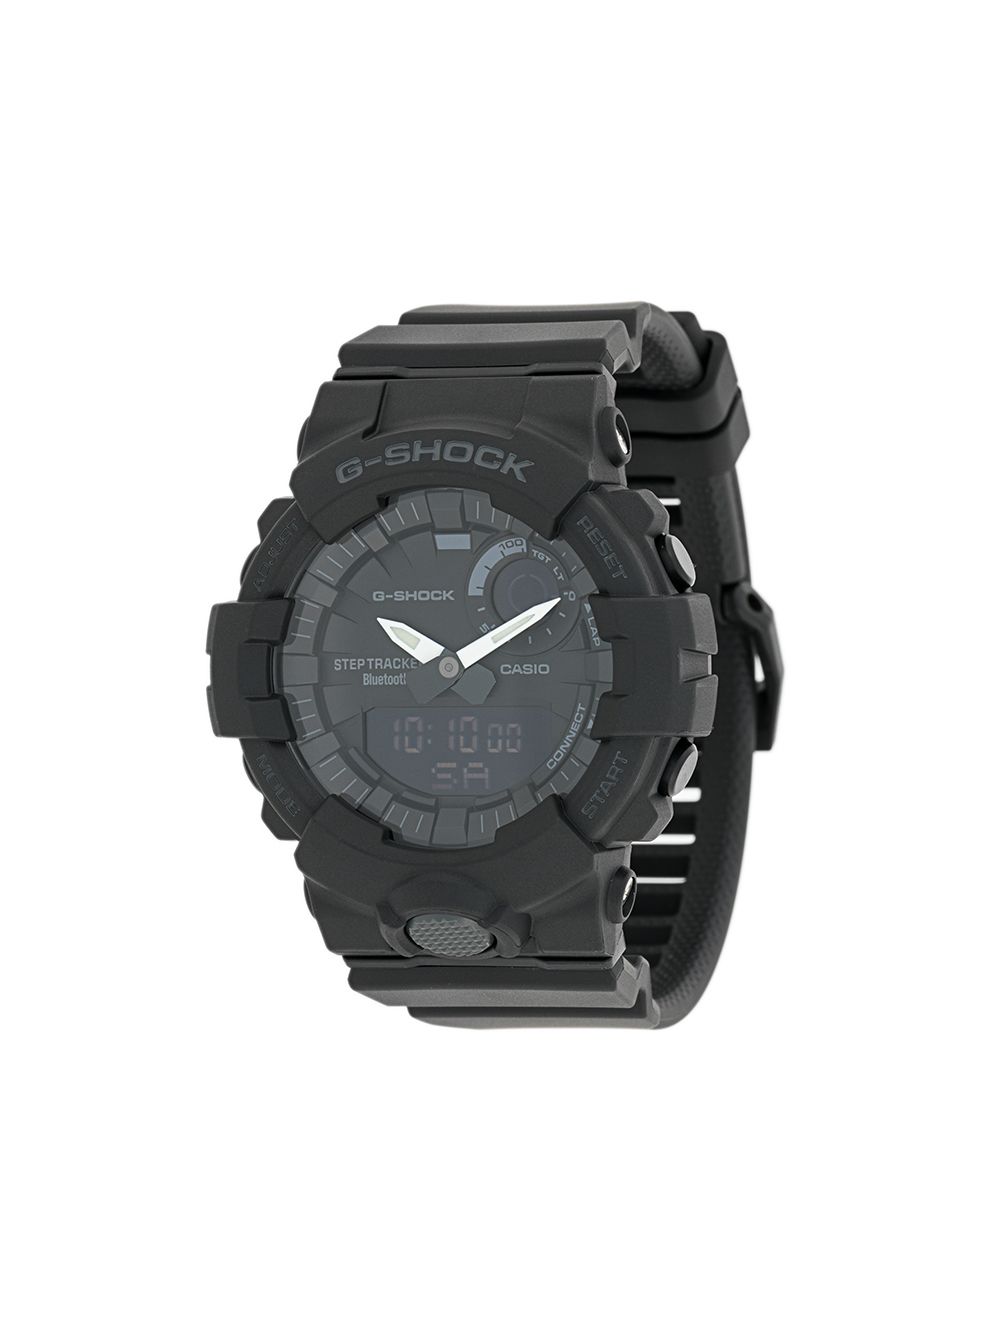 G-Shock G-Shock adjustable watch - Black von G-Shock